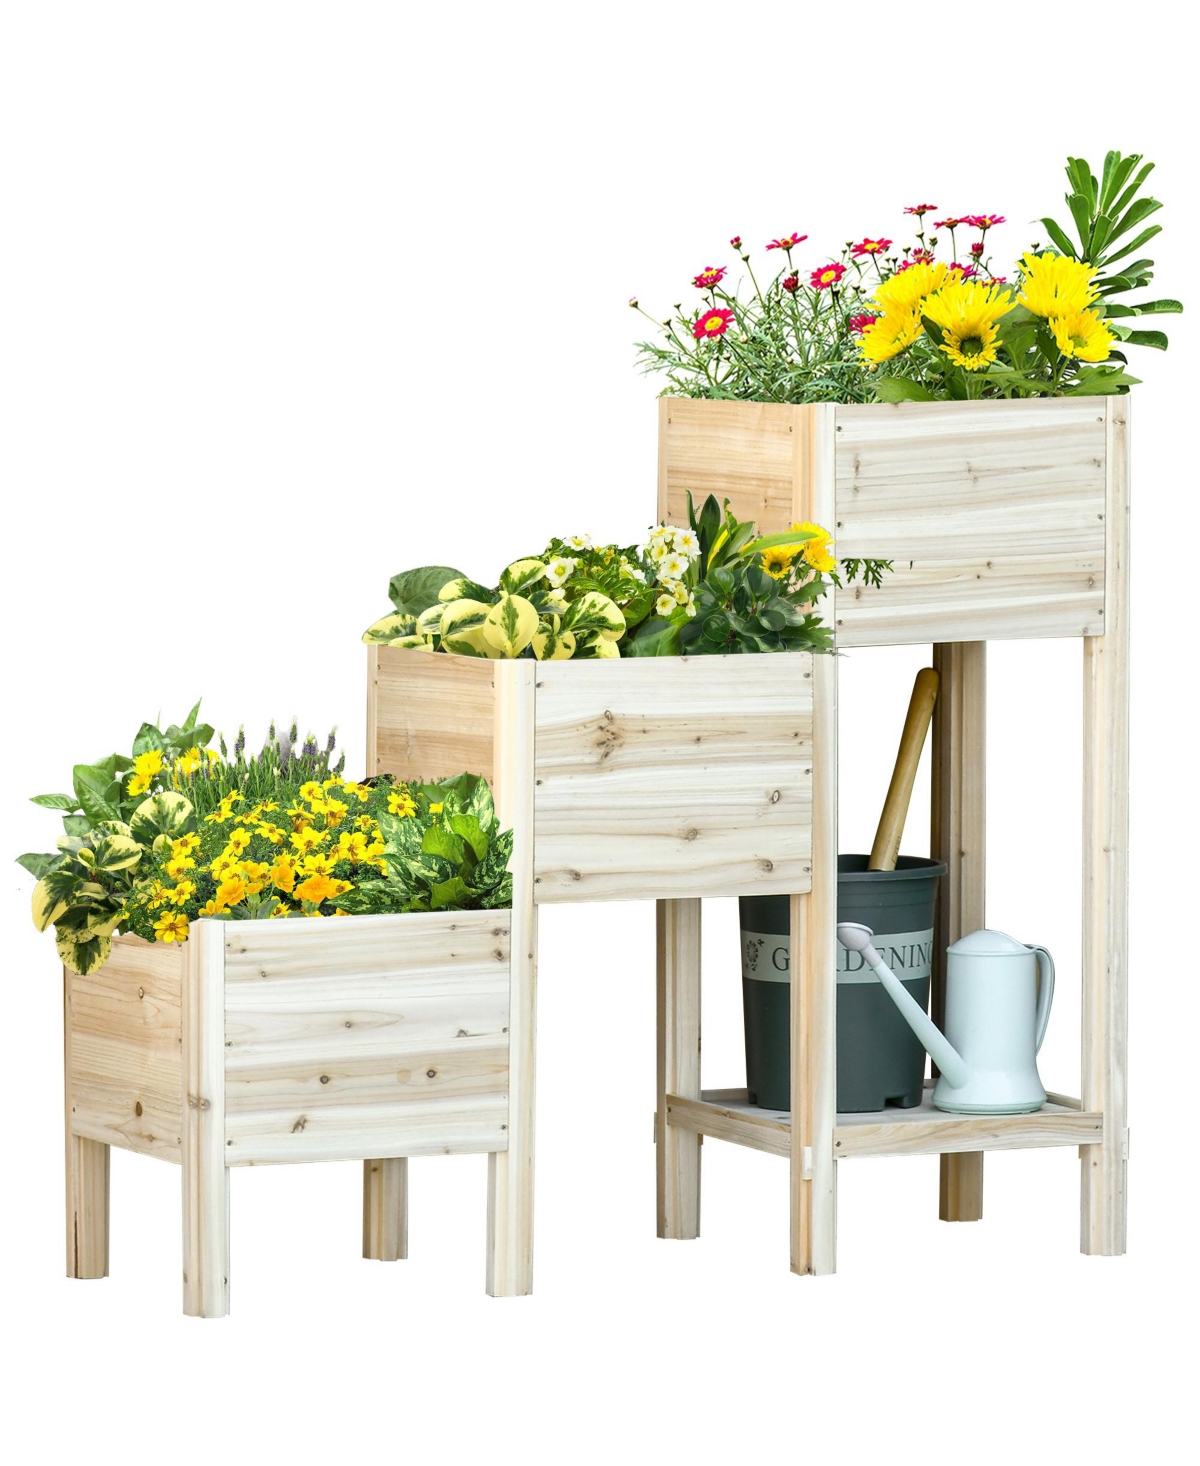 3 Tier Raised Garden Bed w/ Storage Shelf, Wooden Planter Box Kit - Natural